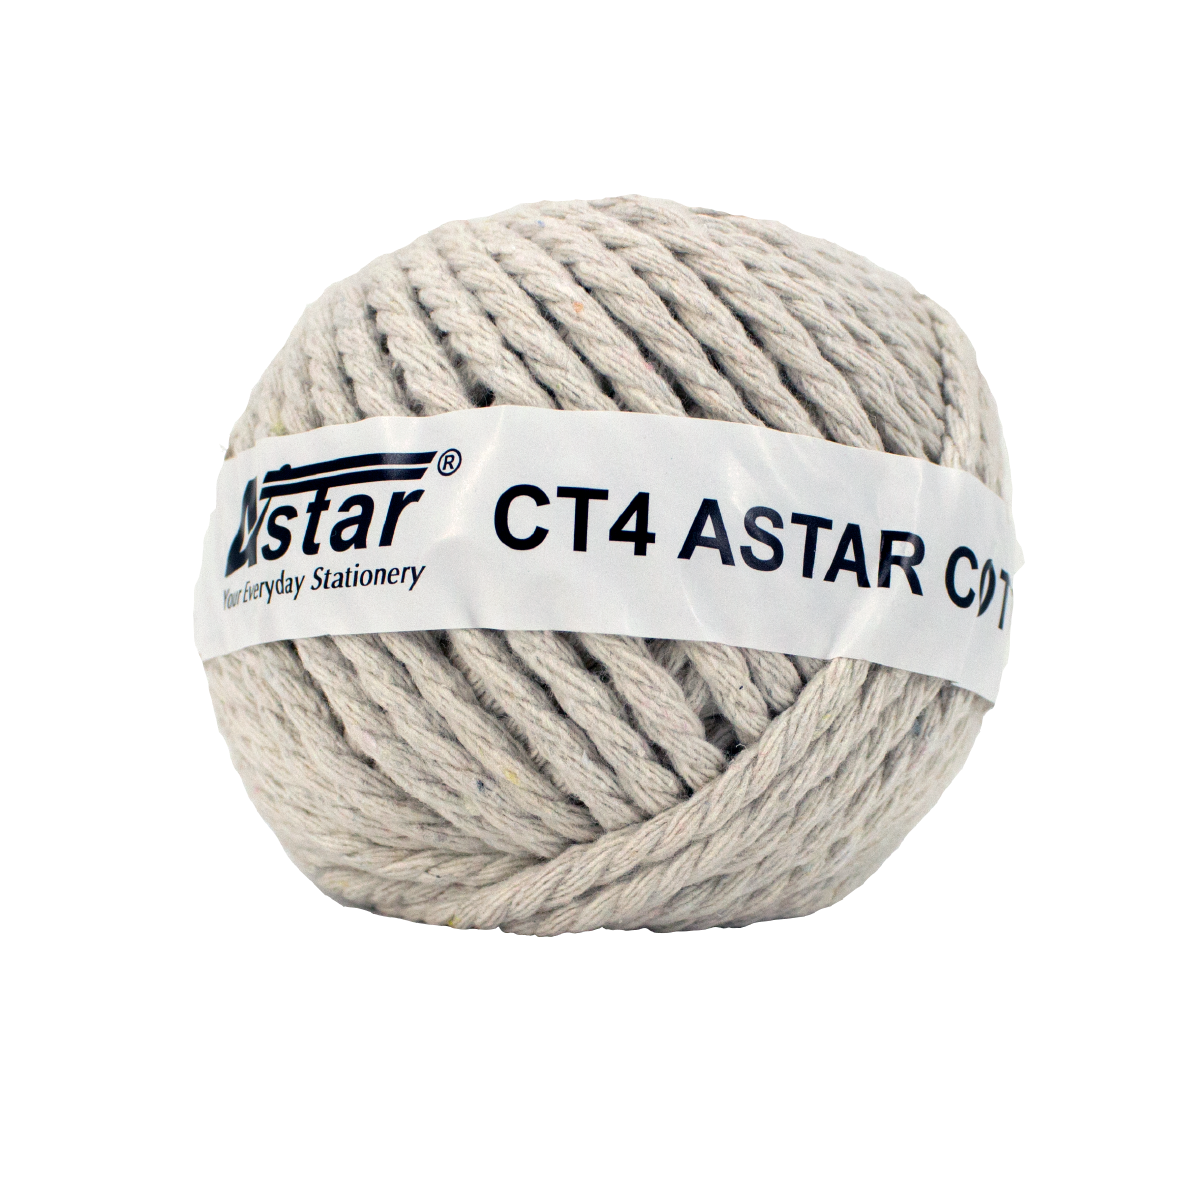 CT4 - ASTAR COTTON TWINE